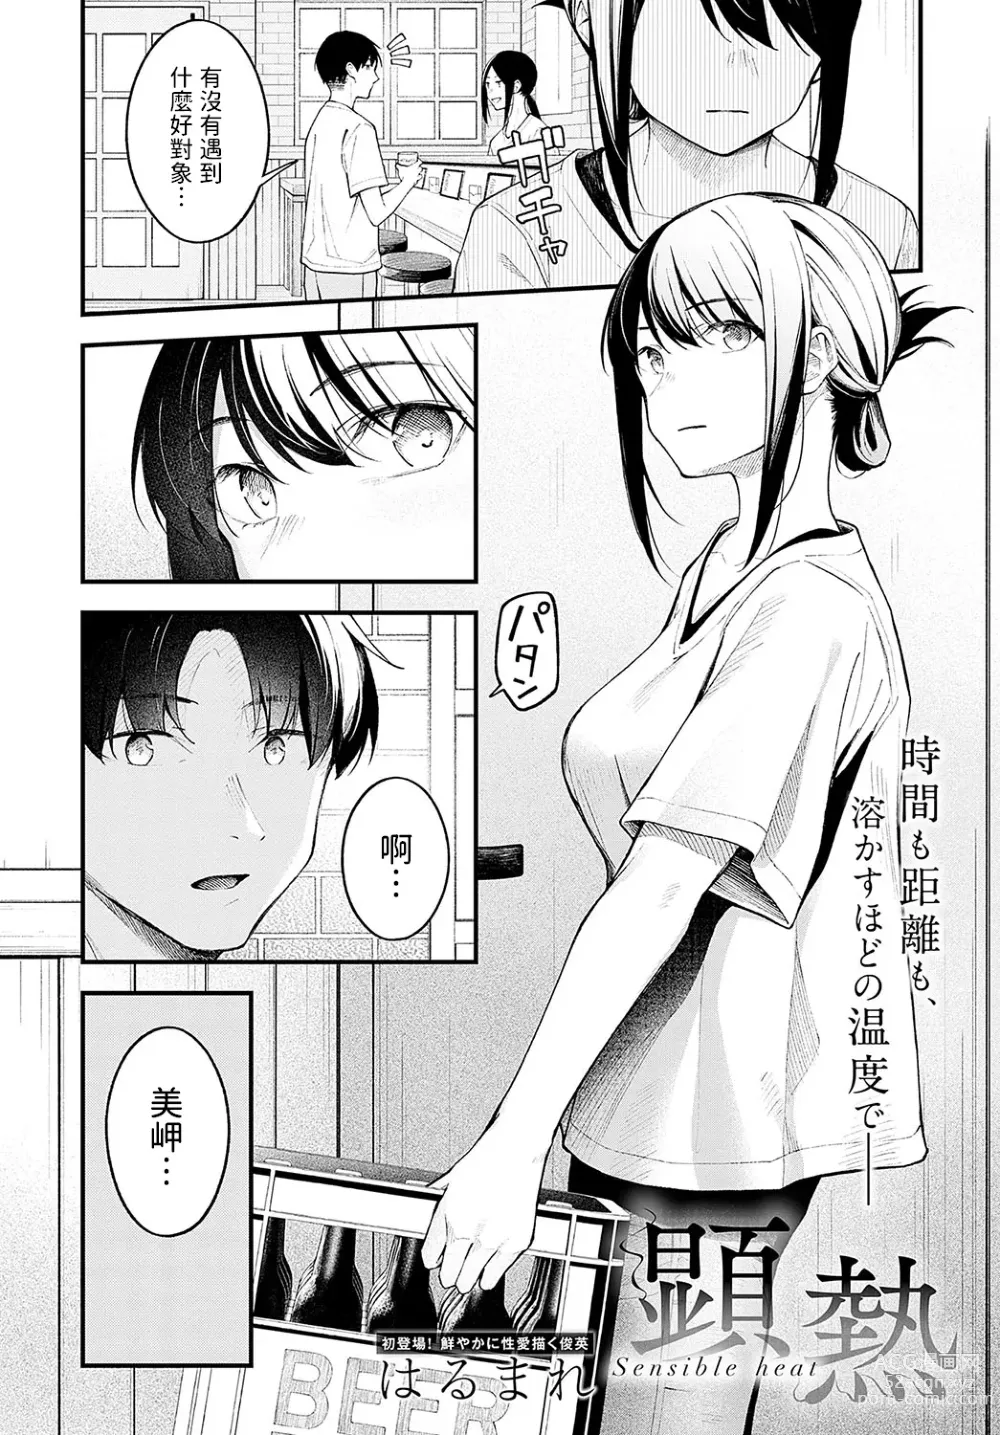 Page 2 of manga Kennetsu